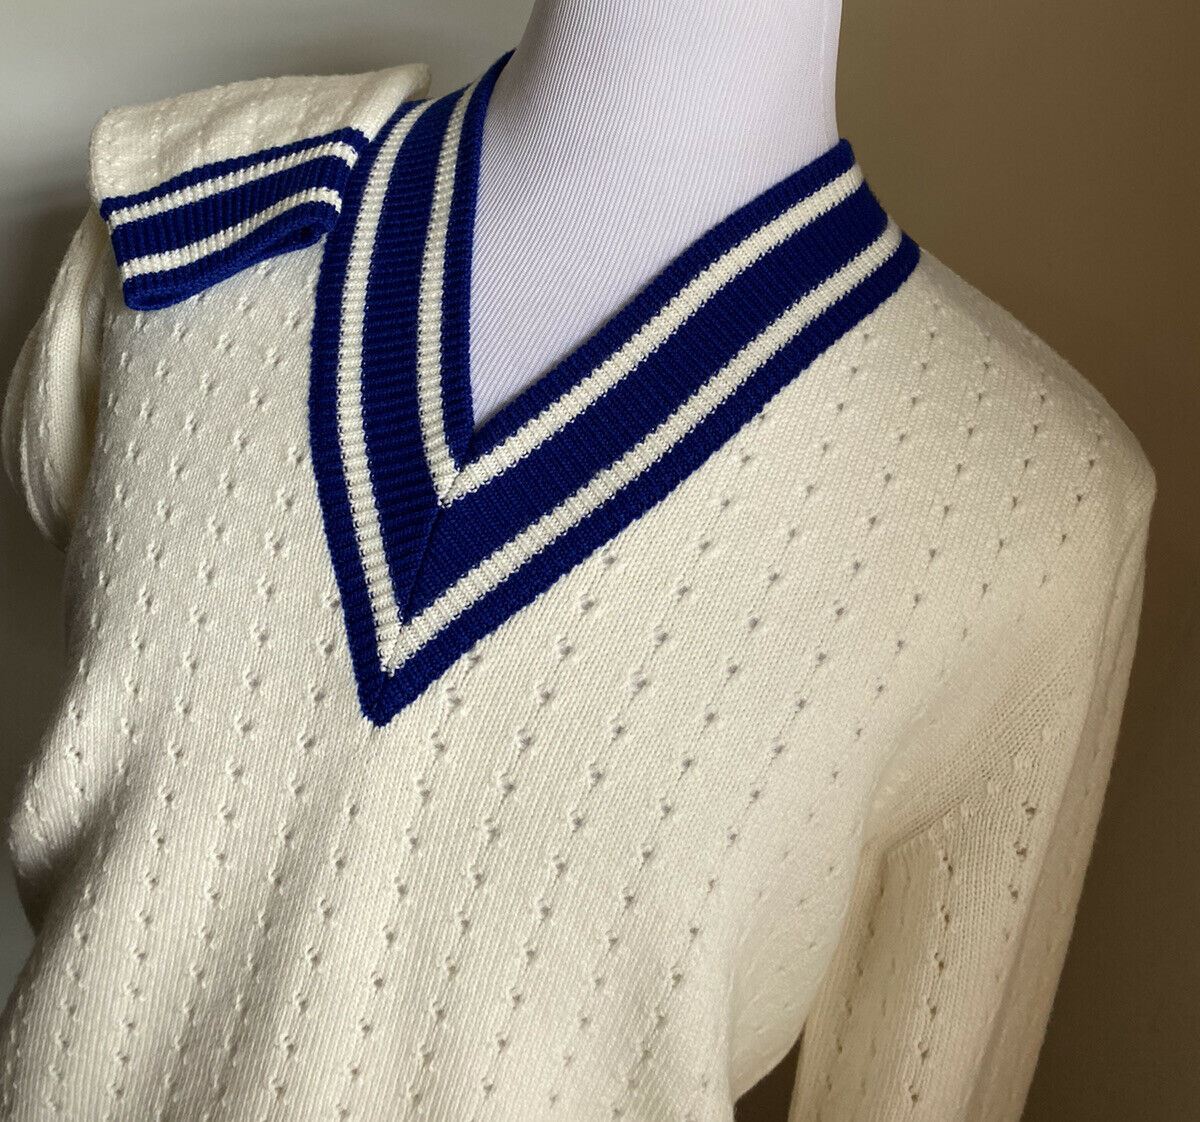 Neu mit Etikett: 1320 $ Gucci Herren-Wollpullover mit V-Ausschnitt Farbe Weiß/Milch/Blau L Italien